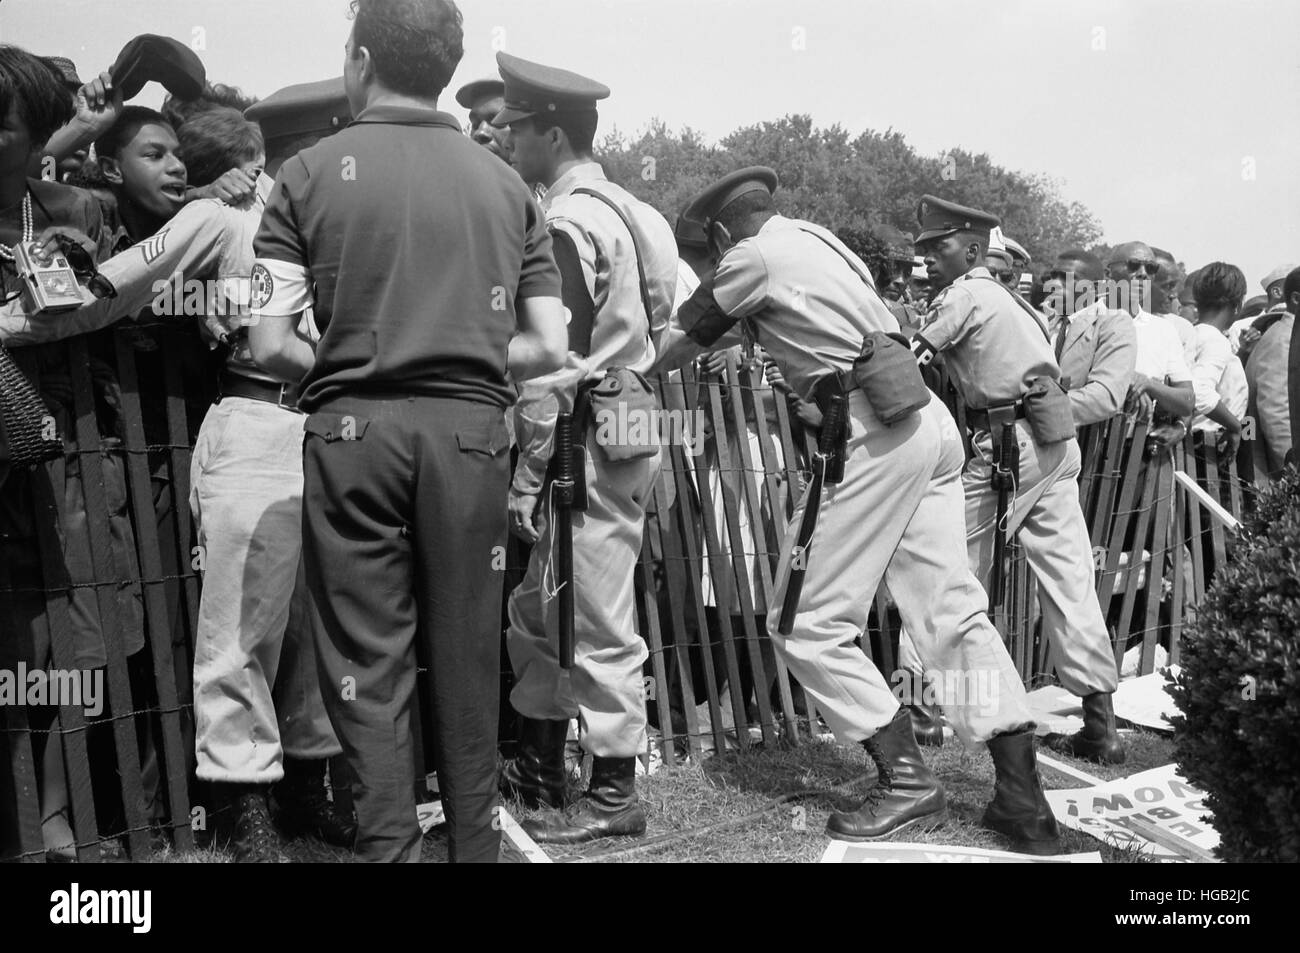 Une foule d'Américains africains derrière une clôture avec la police de l'autre côté, 1963. Banque D'Images